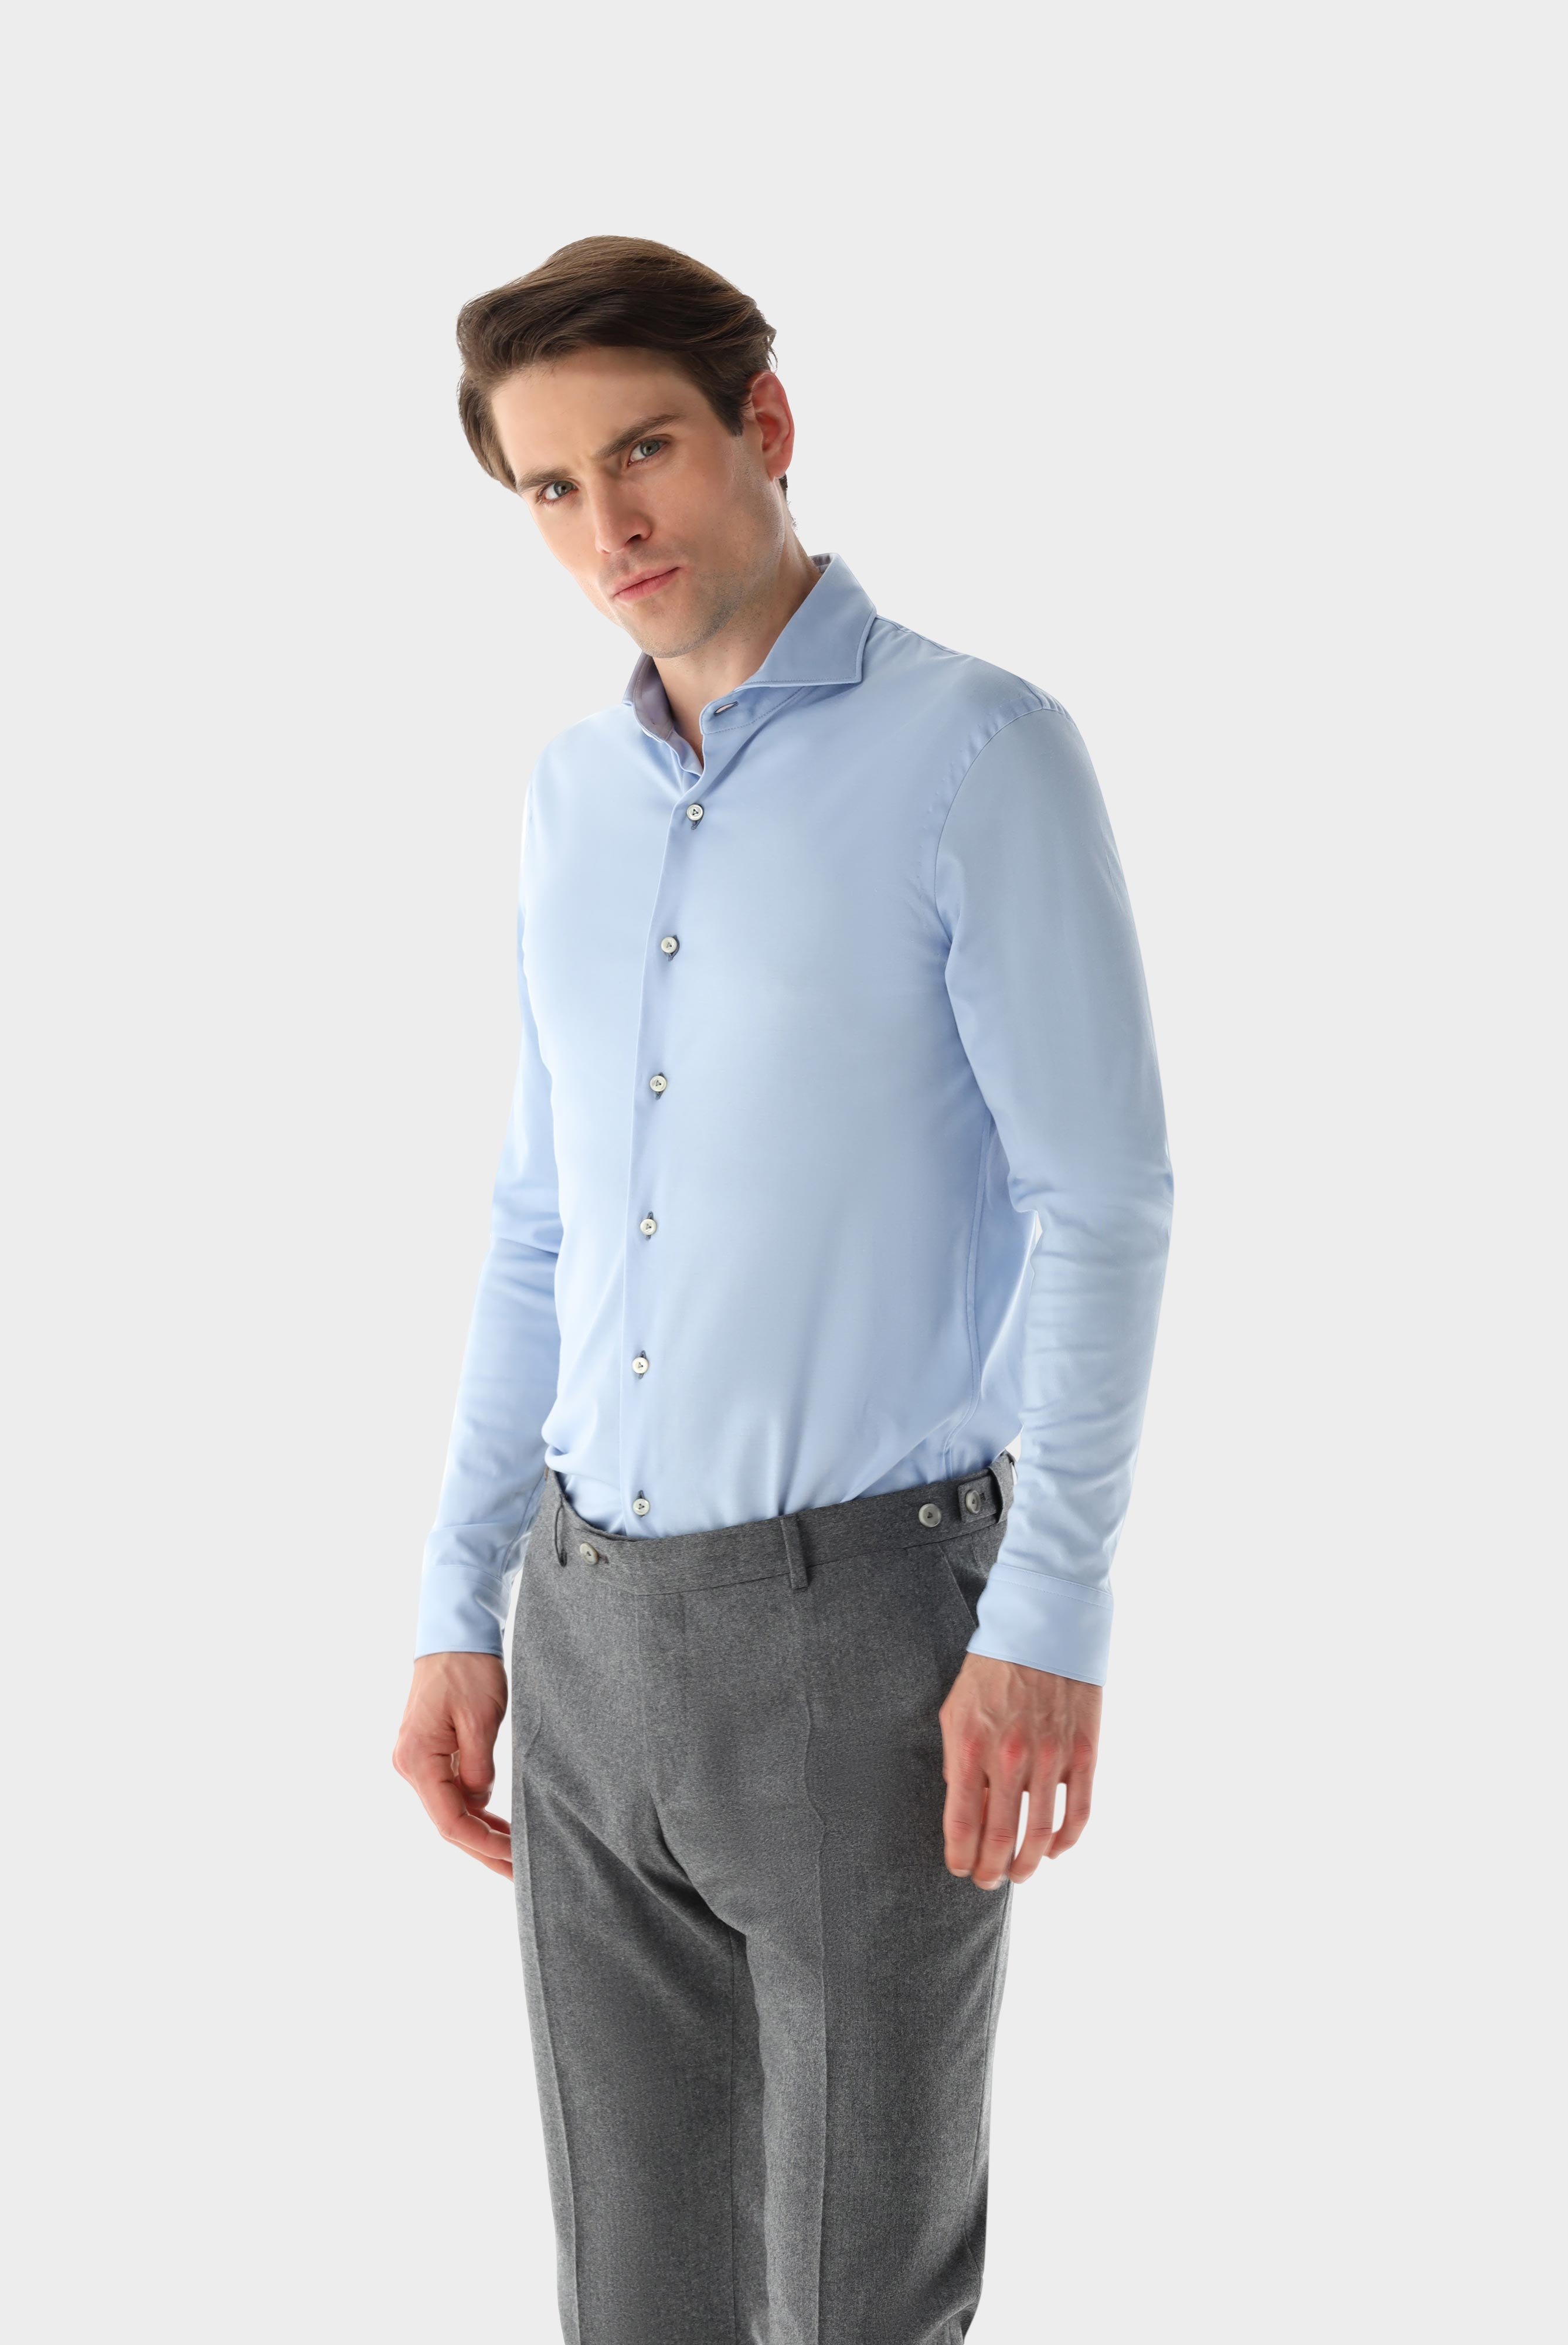 Casual Hemden+Jersey Hemd aus Schweizer Baumwolle Tailor Fit+20.1683.UC.180031.720.M